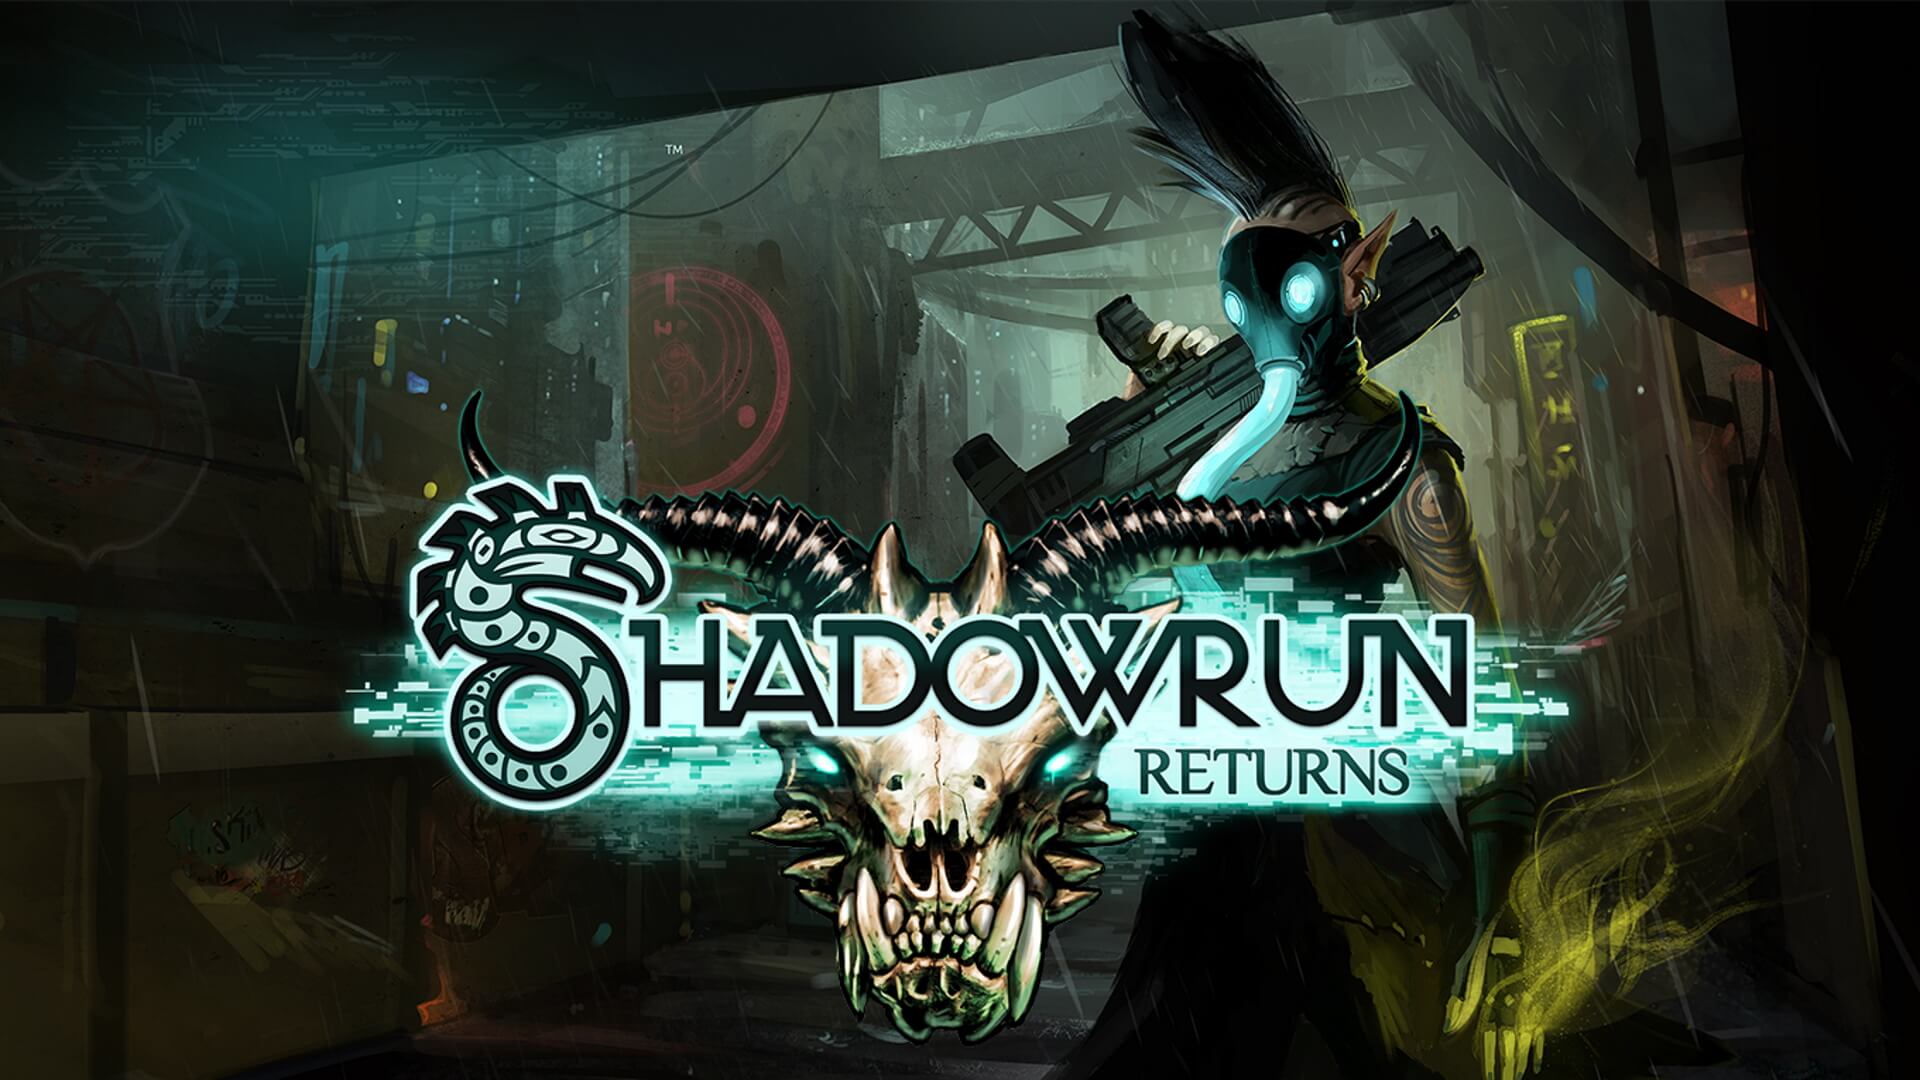 Premiera konsoli Shadowrun zaplanowana jest na 21 czerwca